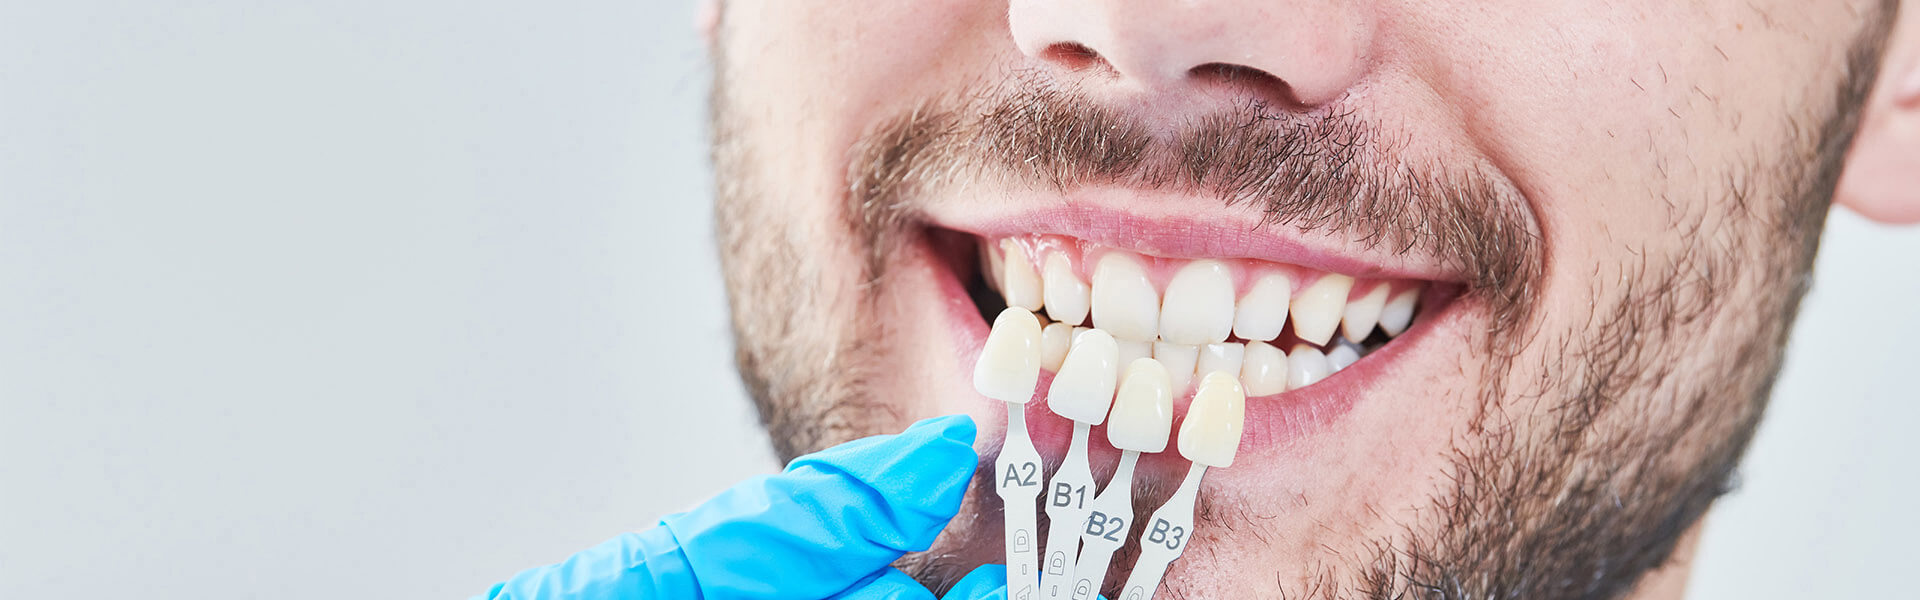 Dental Health and Teeth Veneers